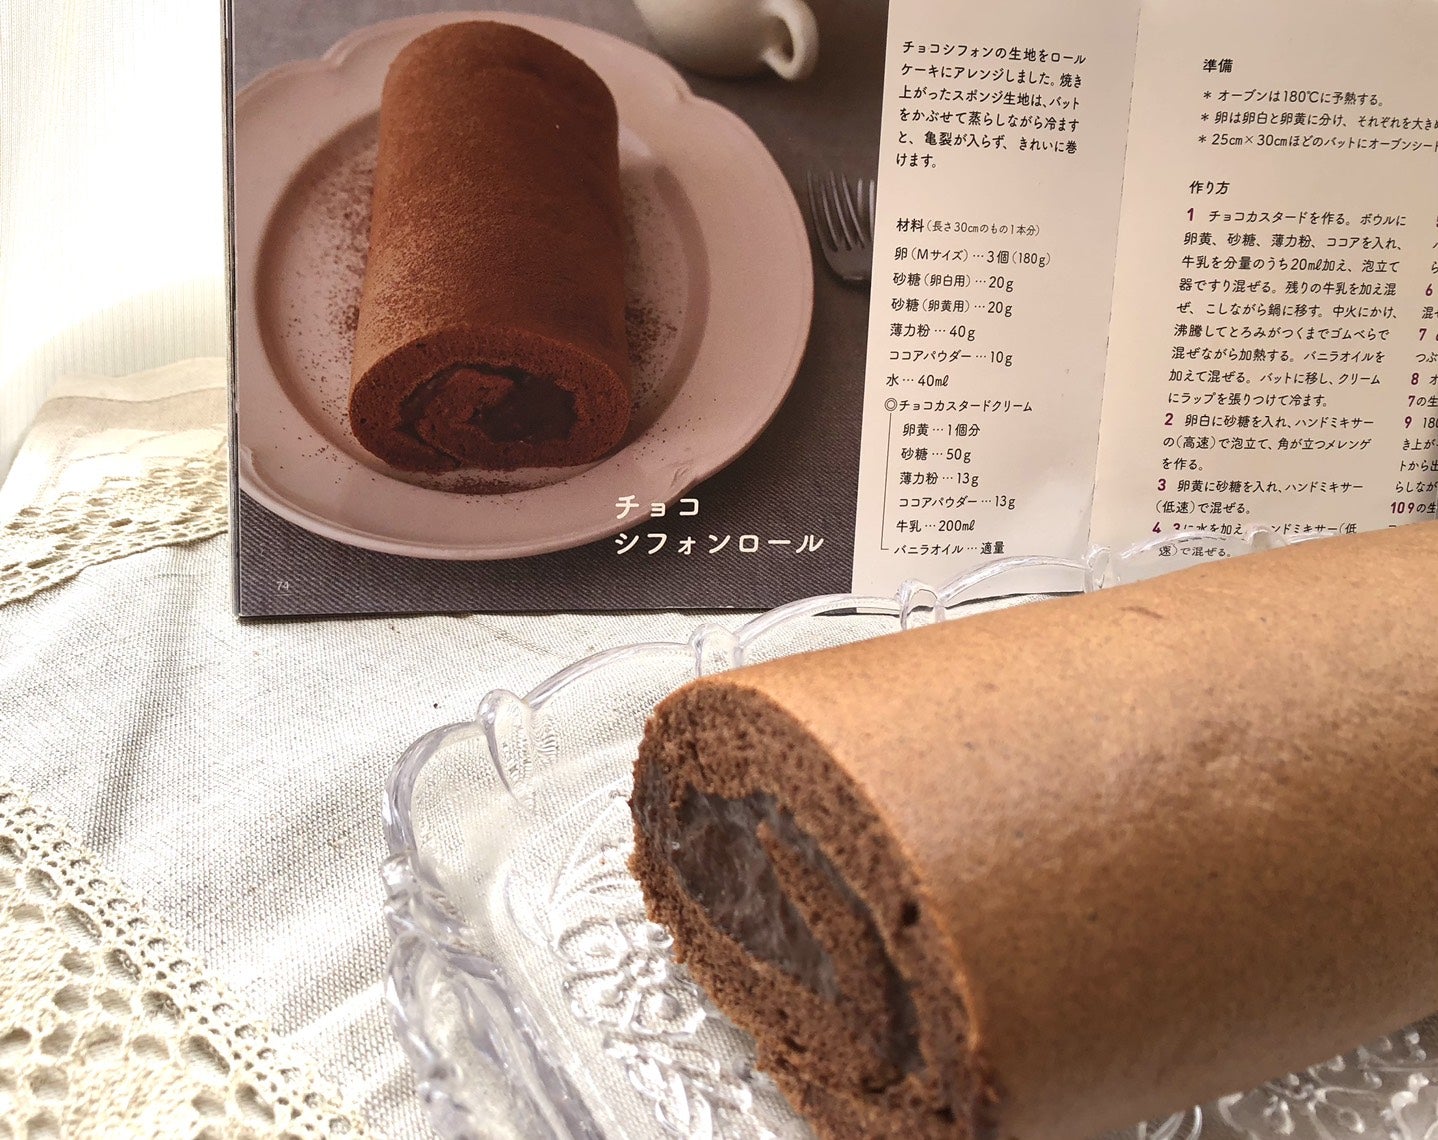 バレンタインデーに「チョコシフォンロール」を作りました。 |  茨木くみ子のオフィシャルブログ「ノンオイルノンバターで作る、体に優しいふとらないお料理」Powered by Ameba